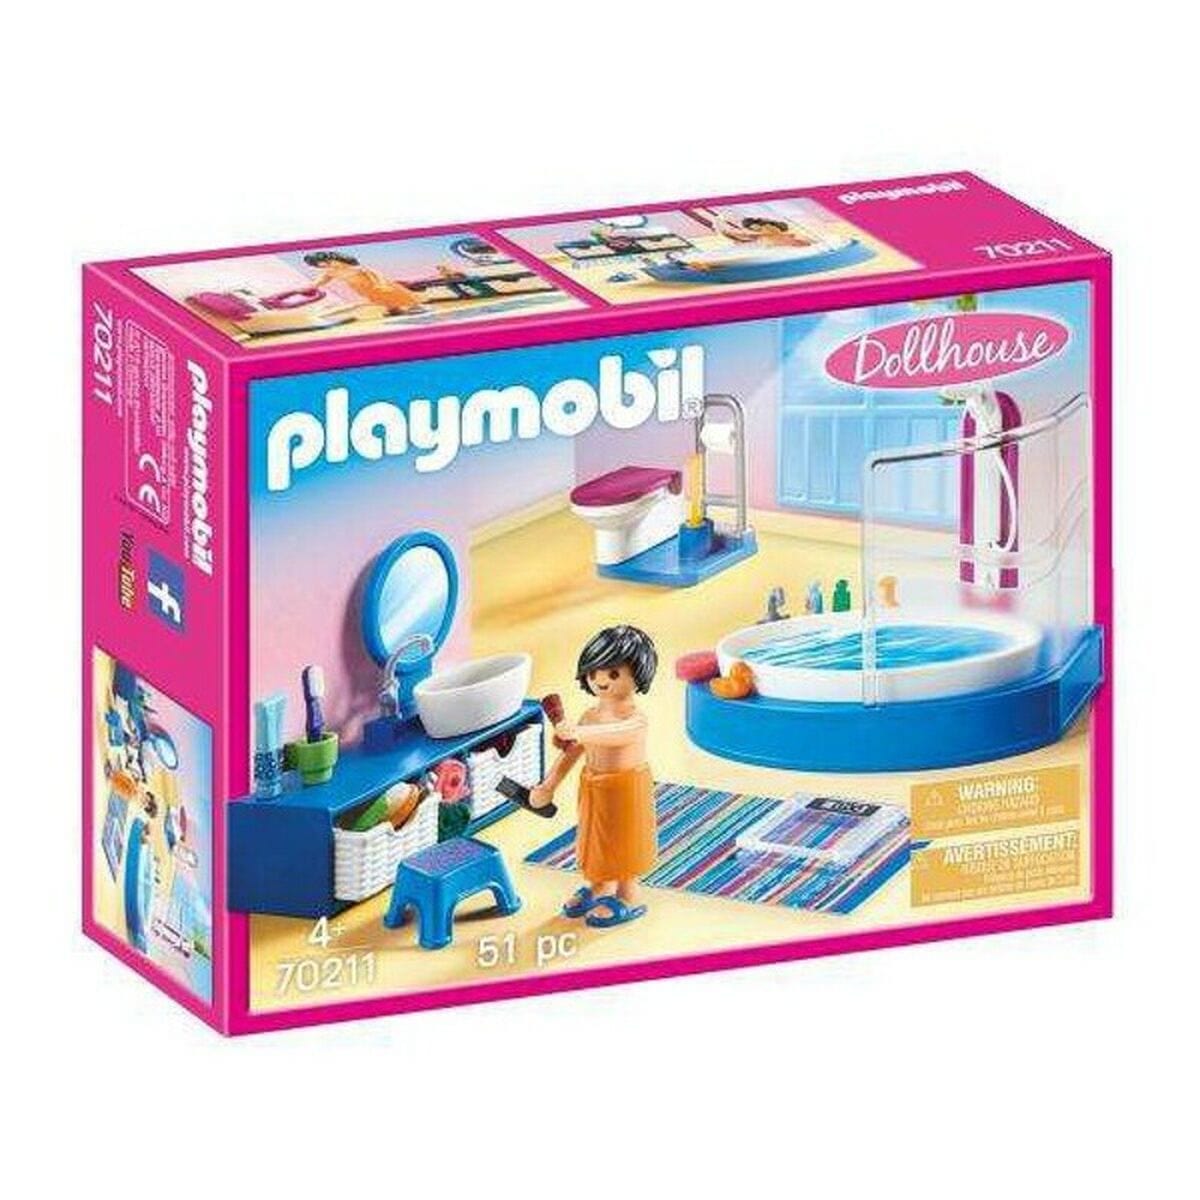 Playmobil Spielzeug | Kostüme > Spielzeug und Spiele > Puppen und Plüschtiere Playset Dollhouse Bathroom Playmobil 70211 Badezimmer (51 pcs)